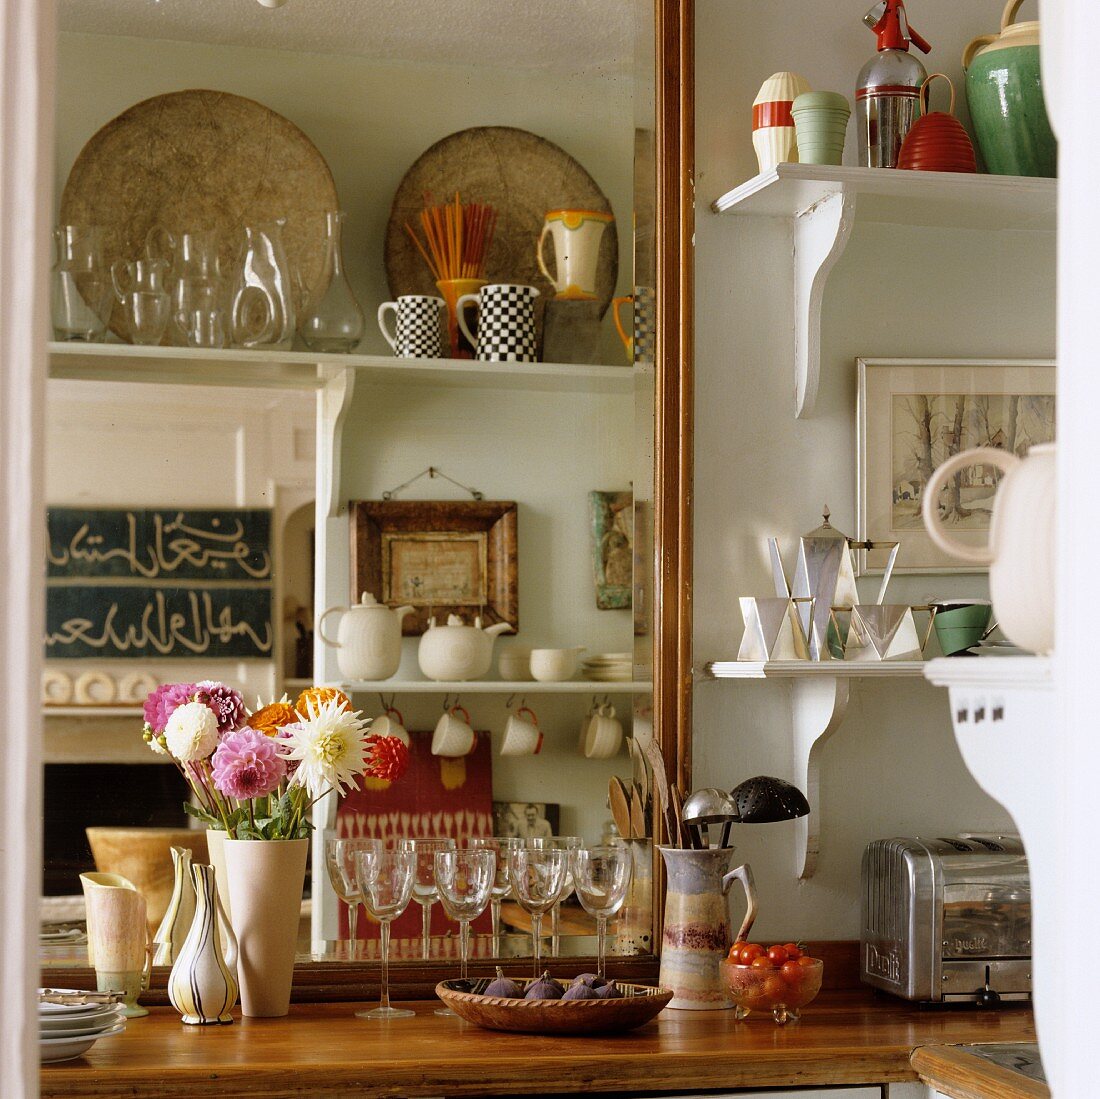 Küchenarbeitsplatte aus Holz mit Gläsern und Geschirr auf weissen Wandkonsolen